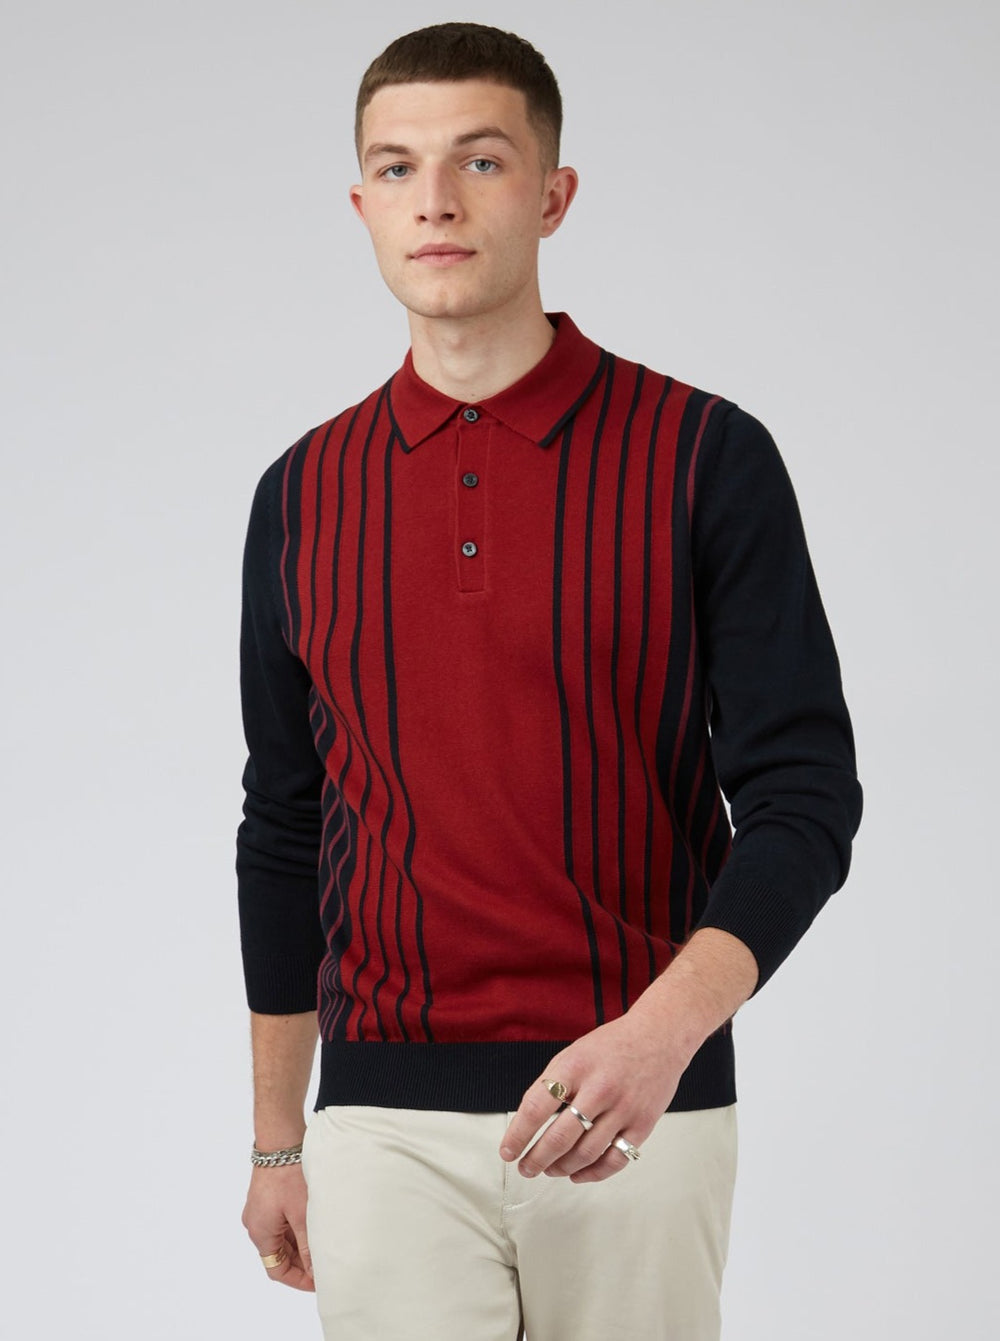 Retro Colorblock Stripe Knit Polo - Red - Ben Sherman